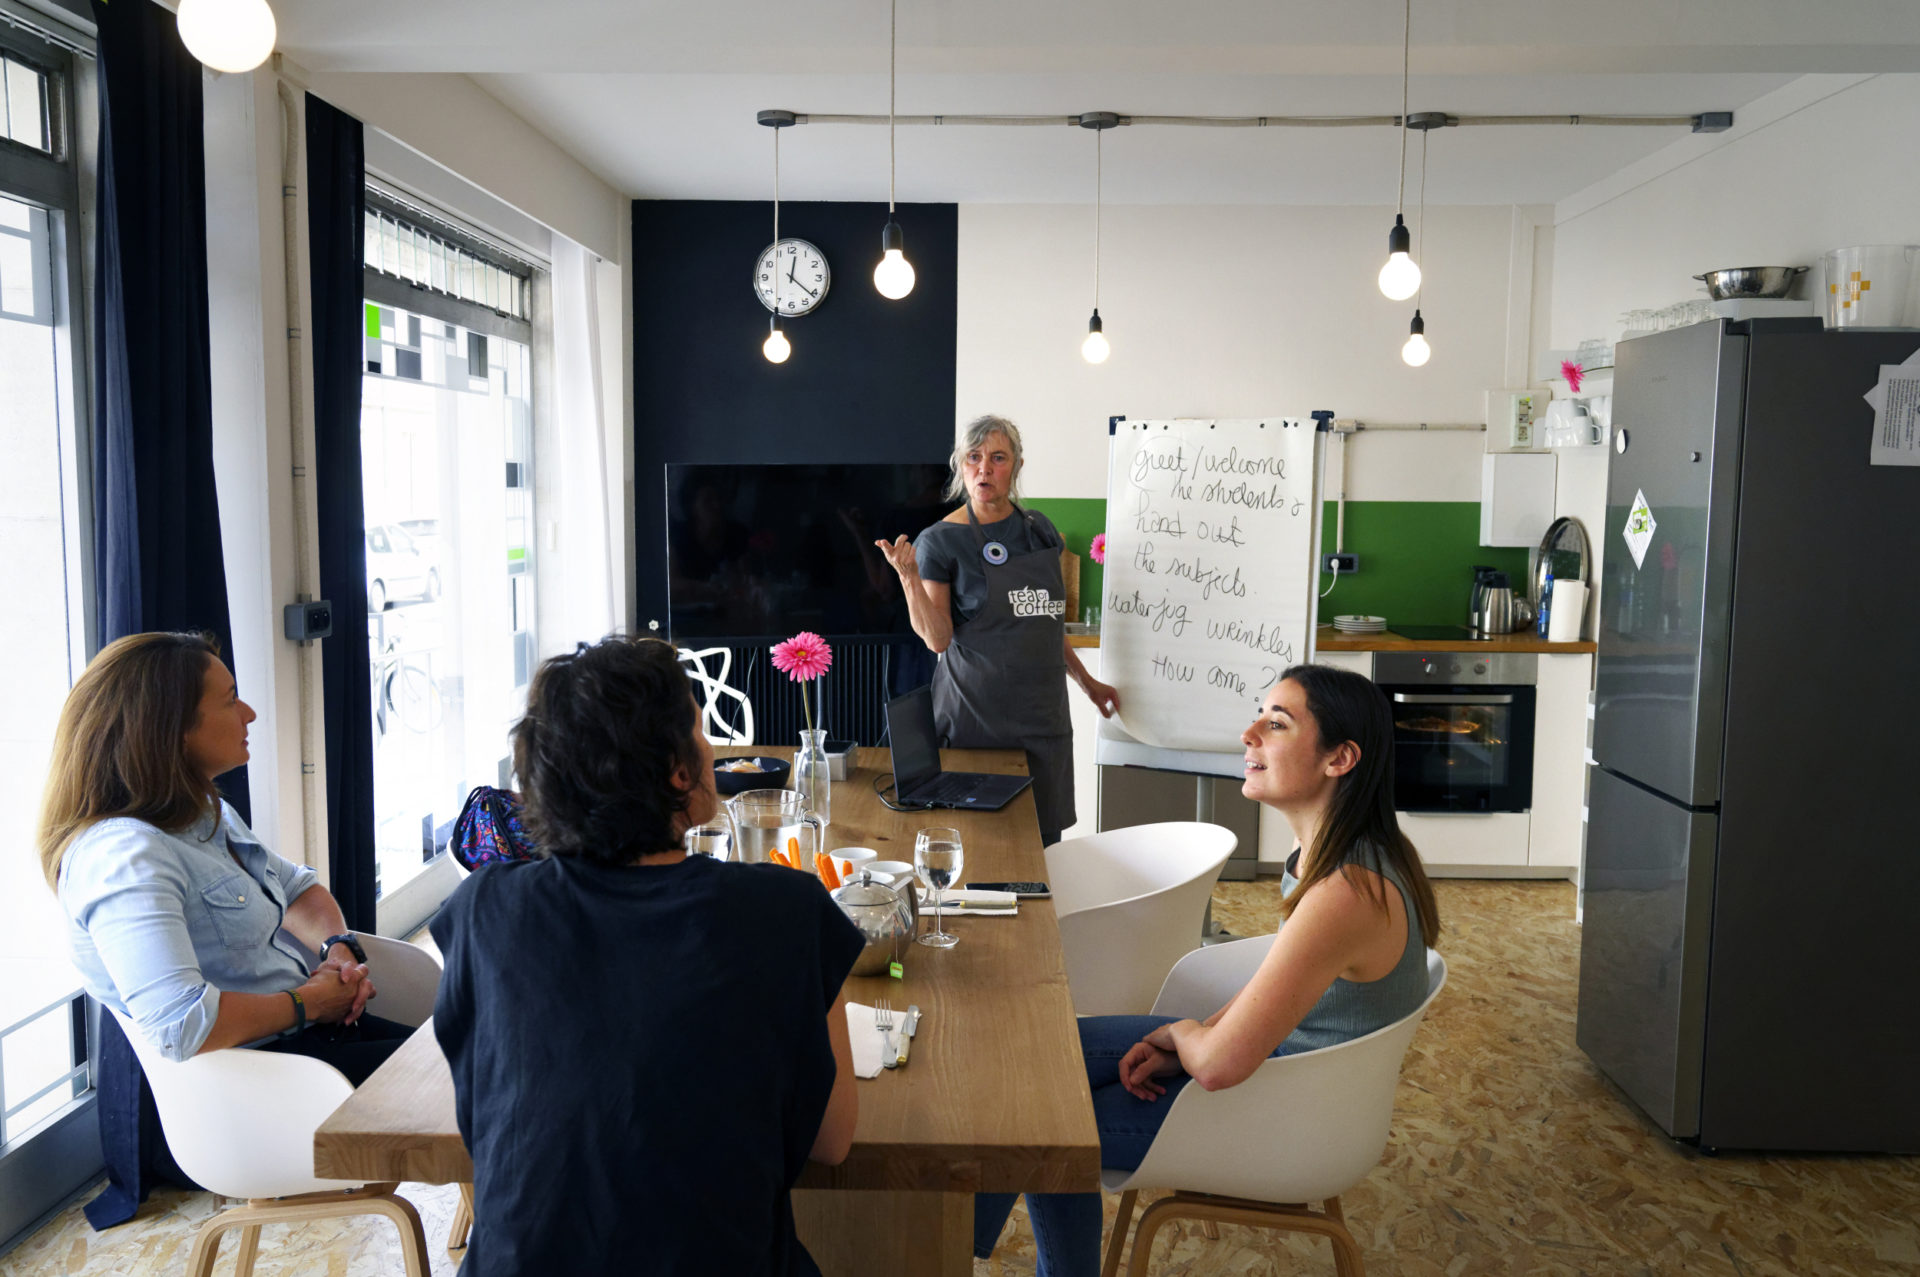 Atelier de conversation, formation, cours et apprentissage en anglais chez tea or coffee à Avignon